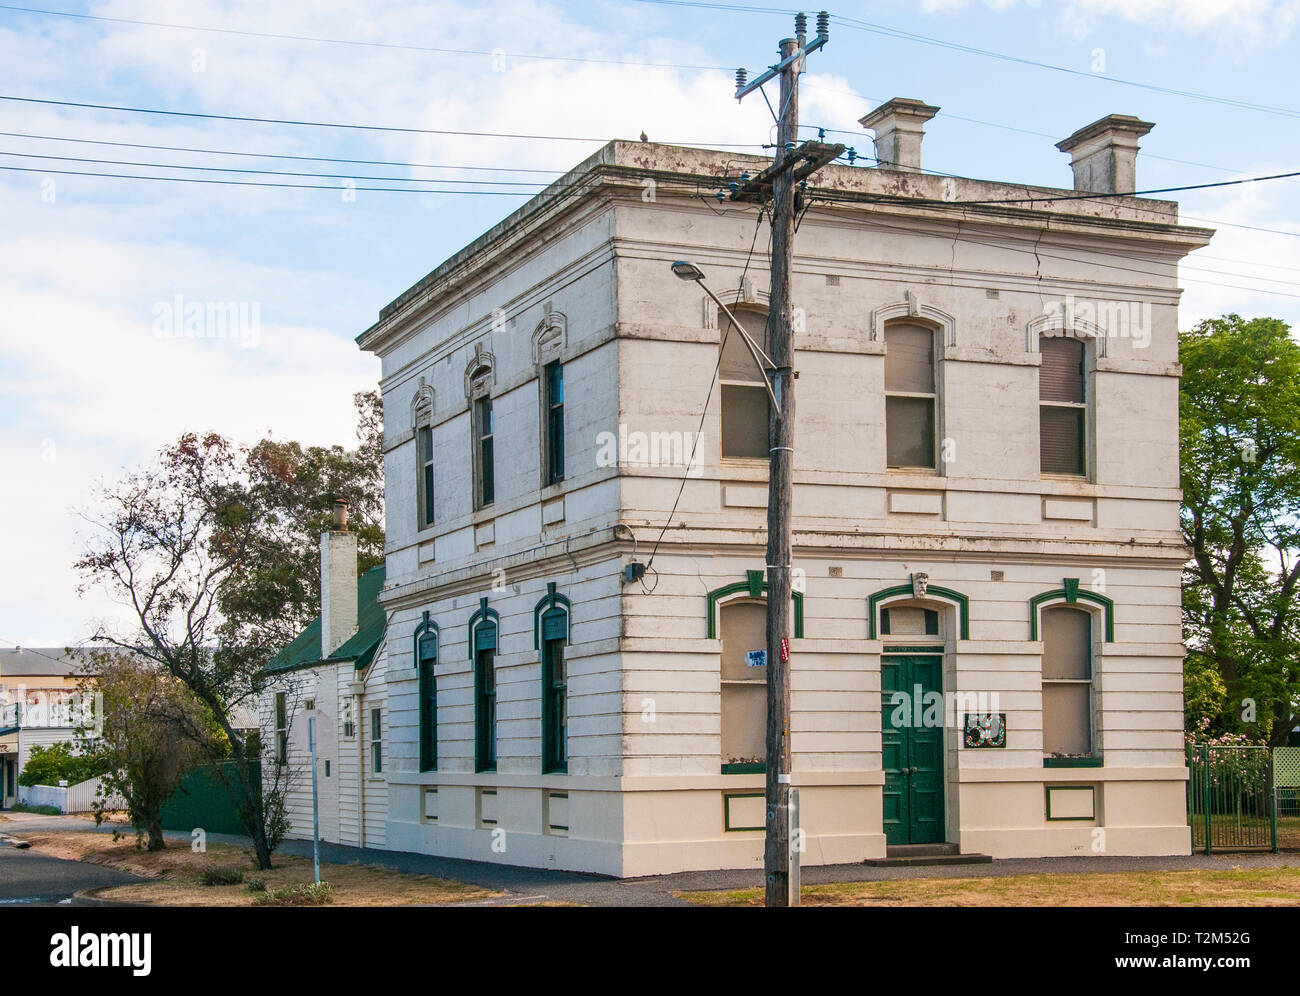 Ancienne Banque chambers, Murtoa, région de Wimmera, Victoria, Australie. Peu d'entreprises restent ouverts dans la ville. Banque D'Images